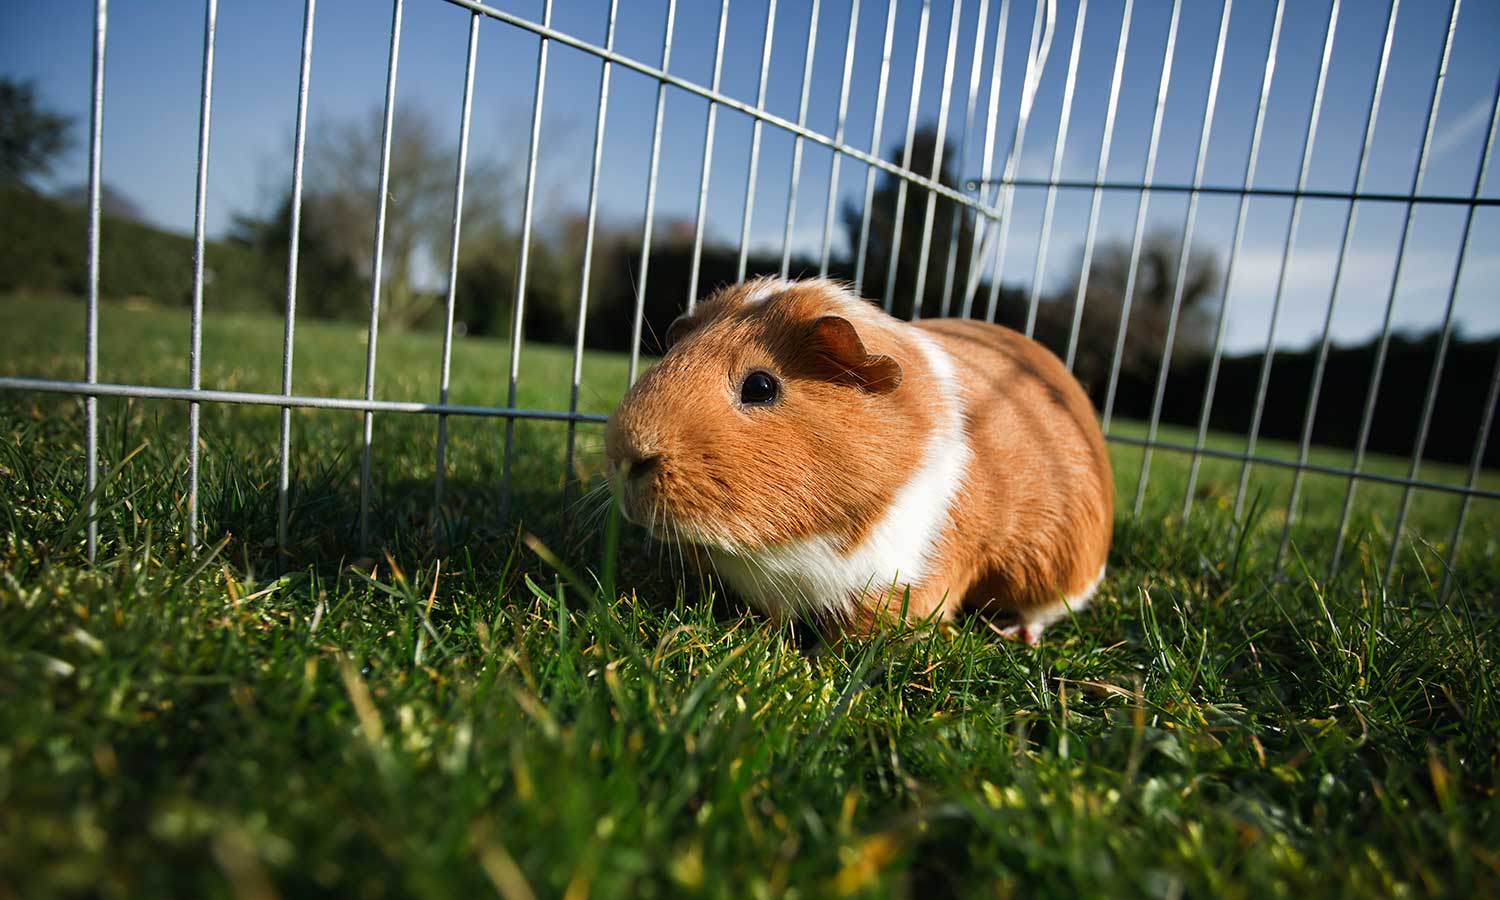 A guinea pig enjoying some grass